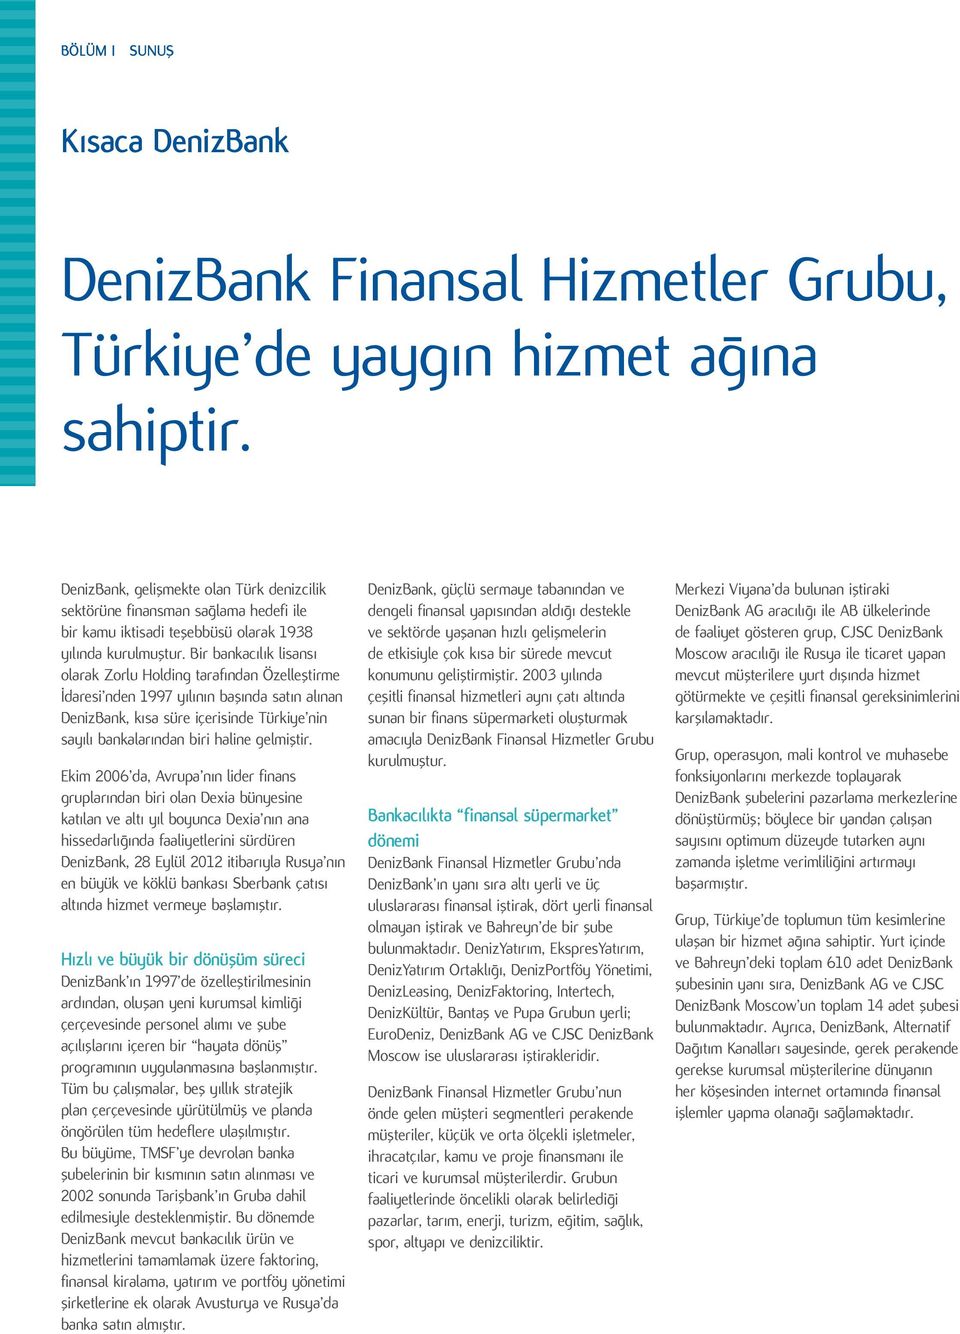 Bir bankacılık lisansı olarak Zorlu Holding tarafından Özelleştirme İdaresi nden 1997 yılının başında satın alınan DenizBank, kısa süre içerisinde Türkiye nin sayılı bankalarından biri haline